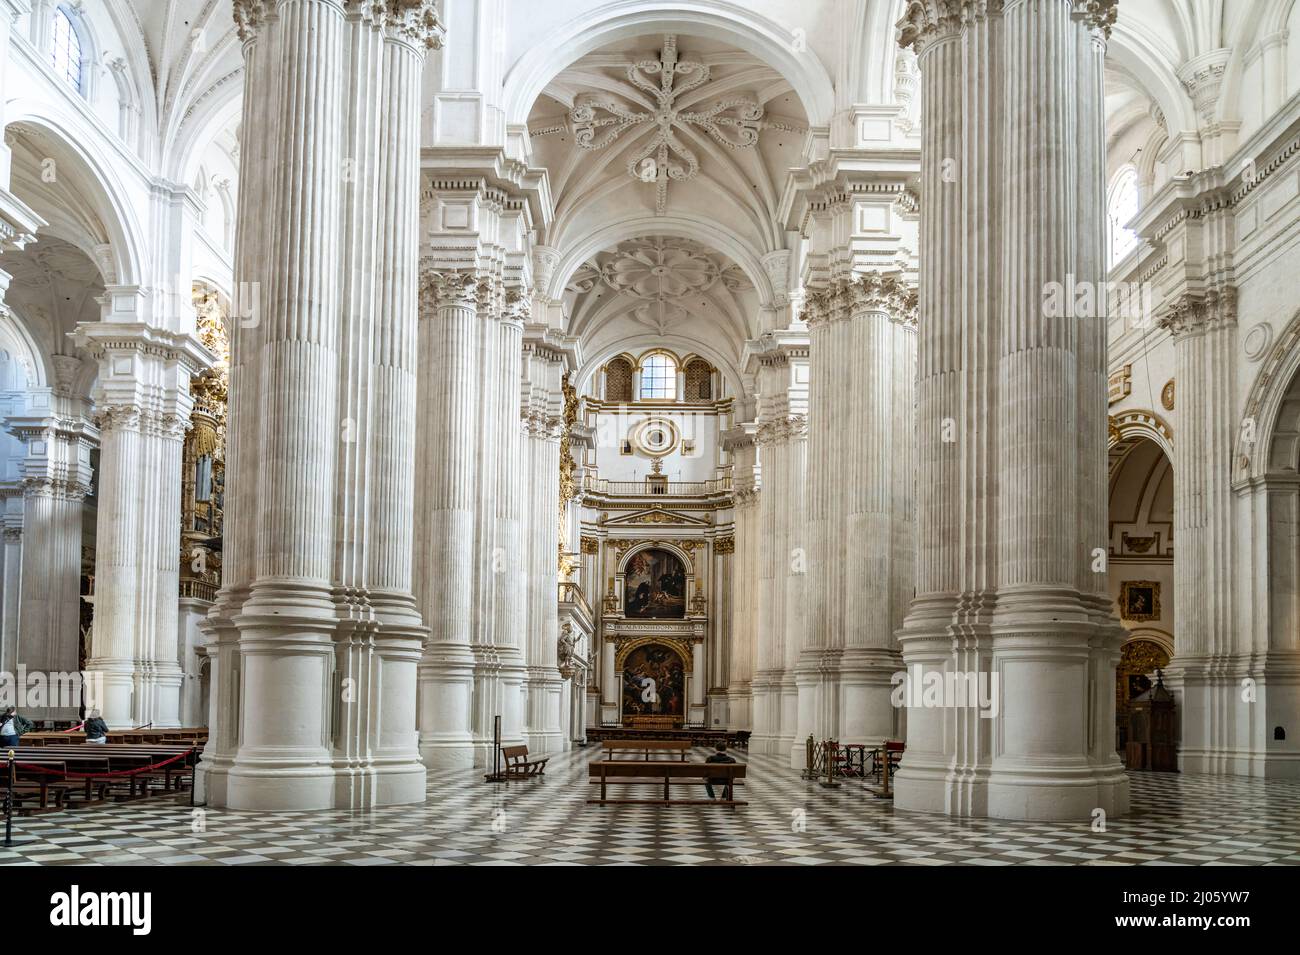 Korinthische Säulen im Innenraum der Kathedrale Santa María de la Encarnación in Granada, Andalusien, Spanien | korinthische Säulen der Kathedrale Stockfoto